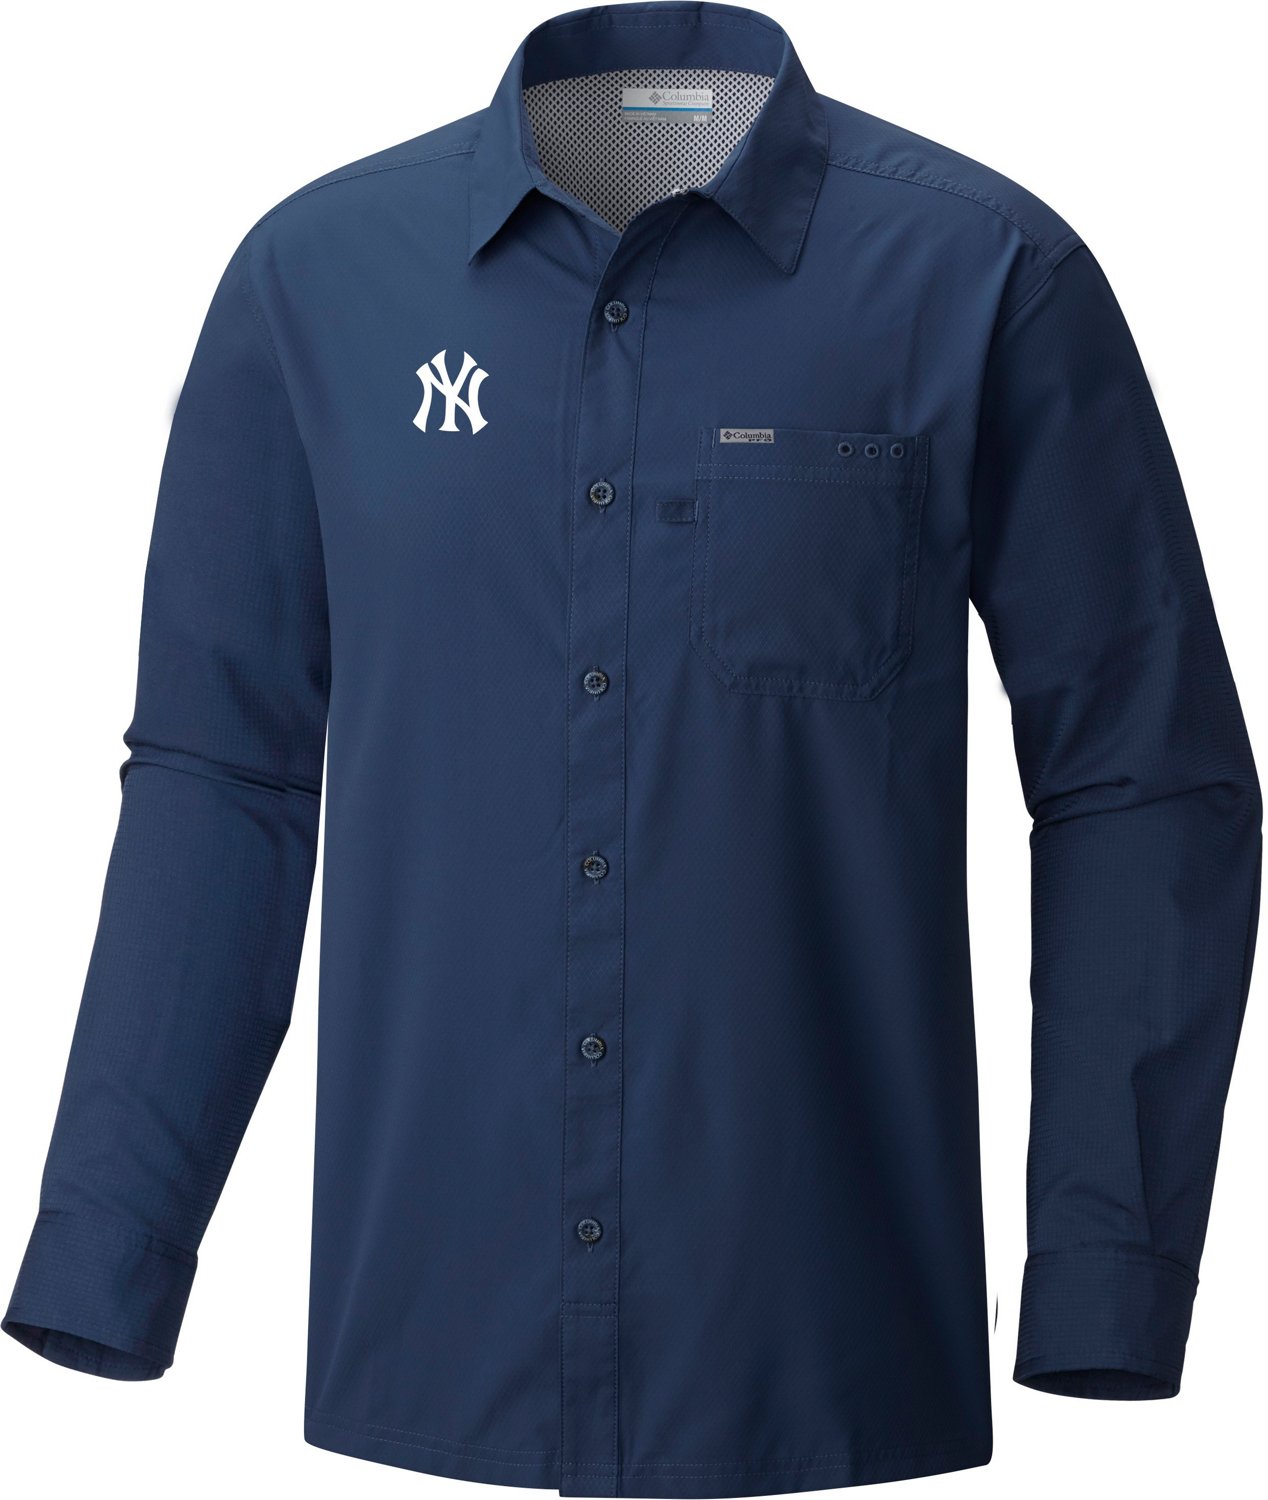 New York Yankees Long Sleeve